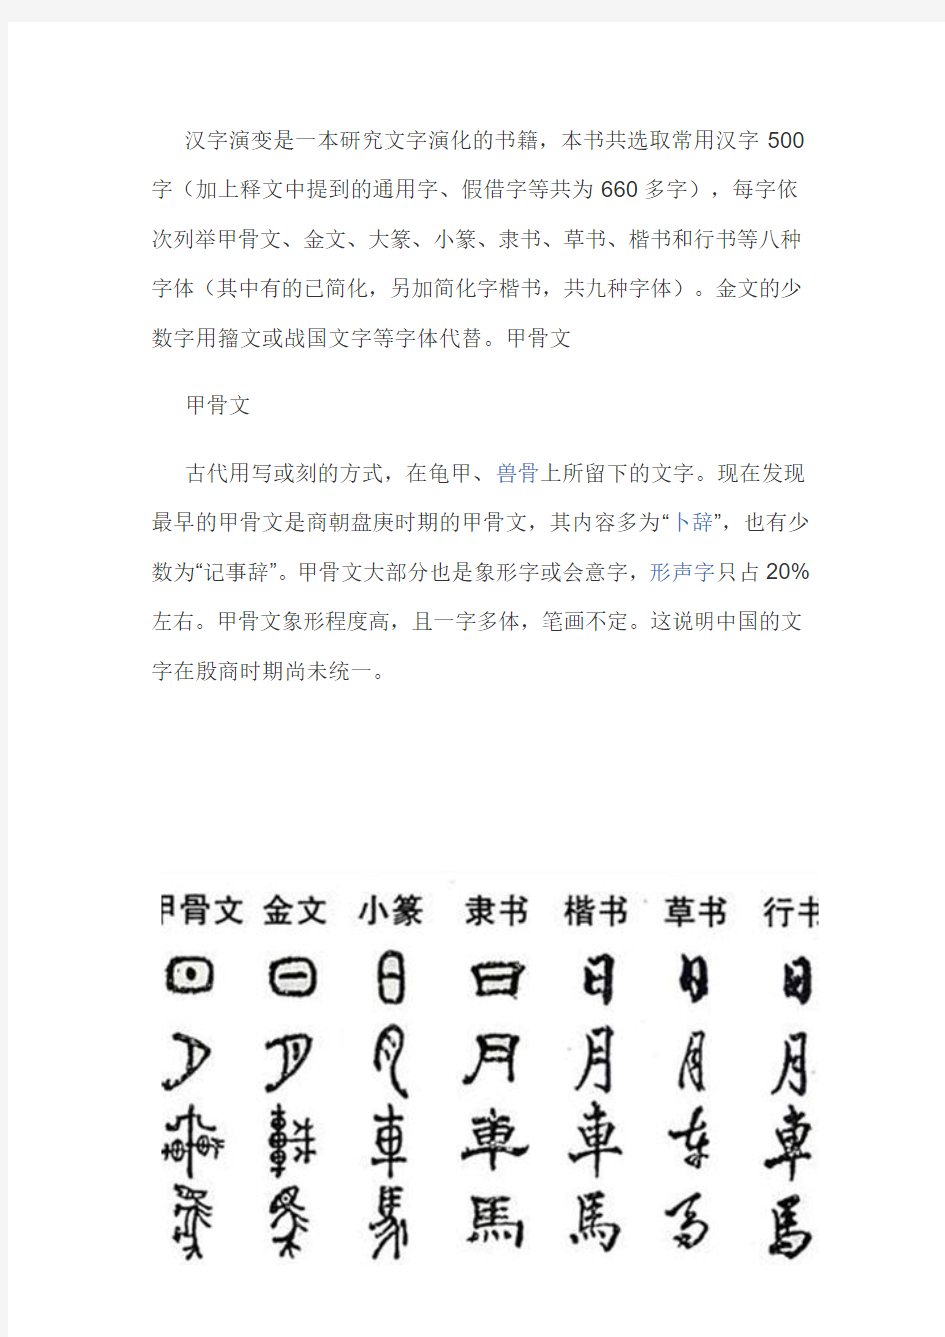 汉字演变是一本研究文字演化的书籍